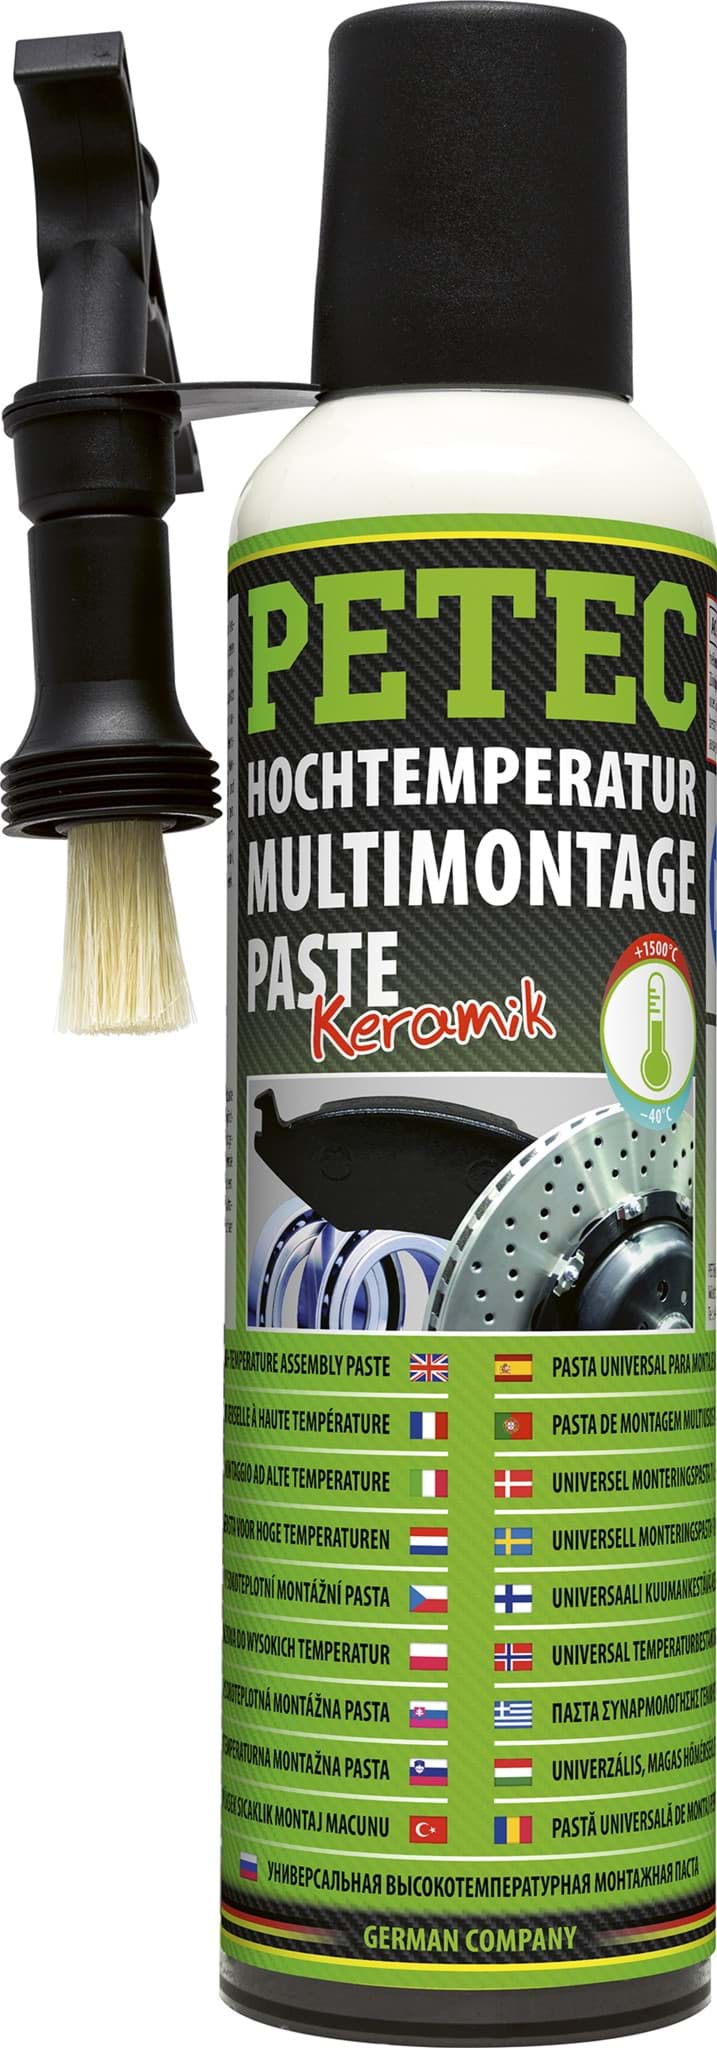 Petec Hochtemperatur Montagepaste Keramikpaste bis 1500°C